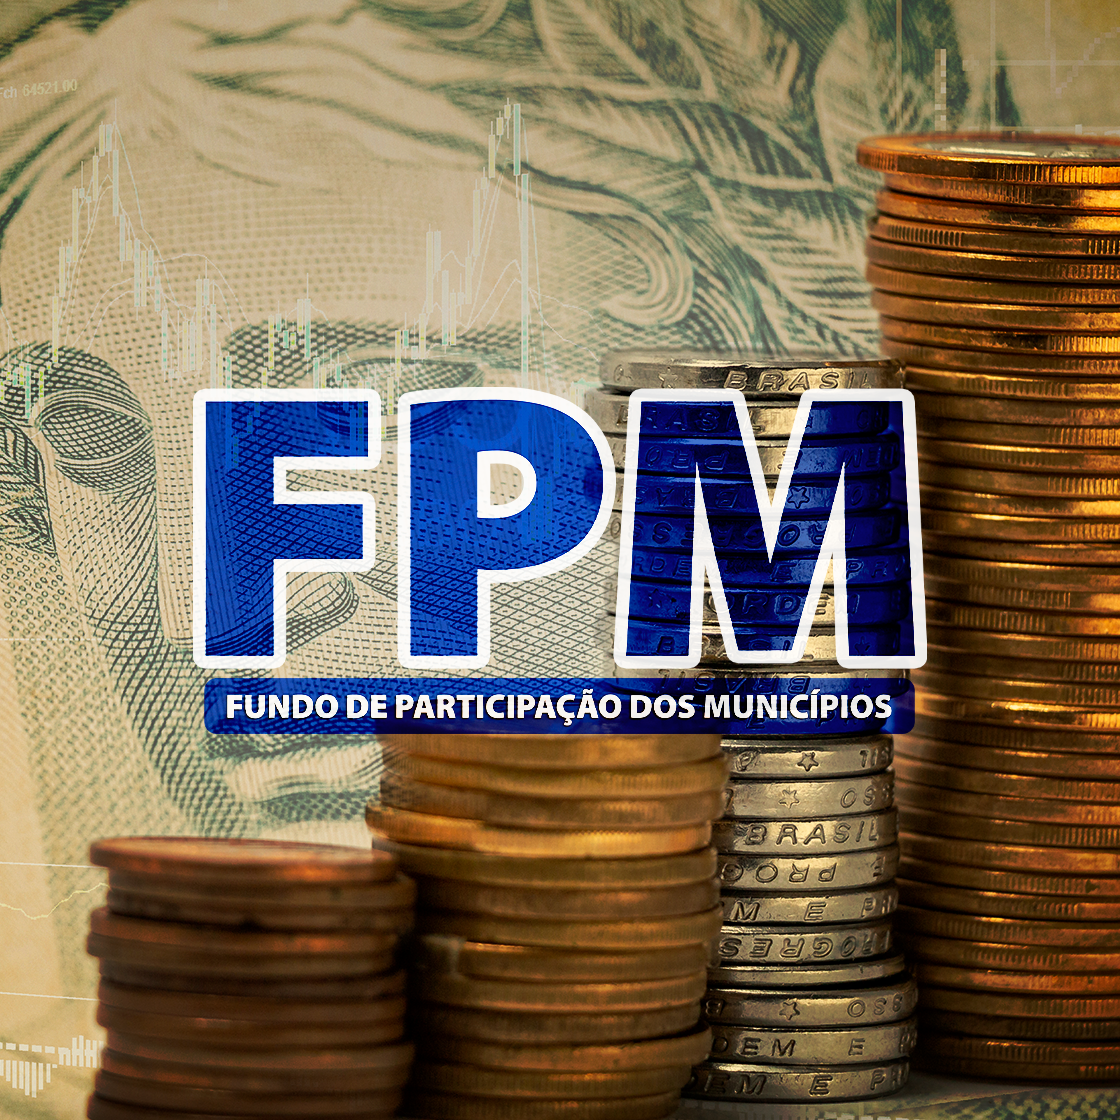 Última parcela do Fundo de Participação dos Municípios (FPM) de fevereiro será transferida nesta quinta-feira, 29 de fevereiro